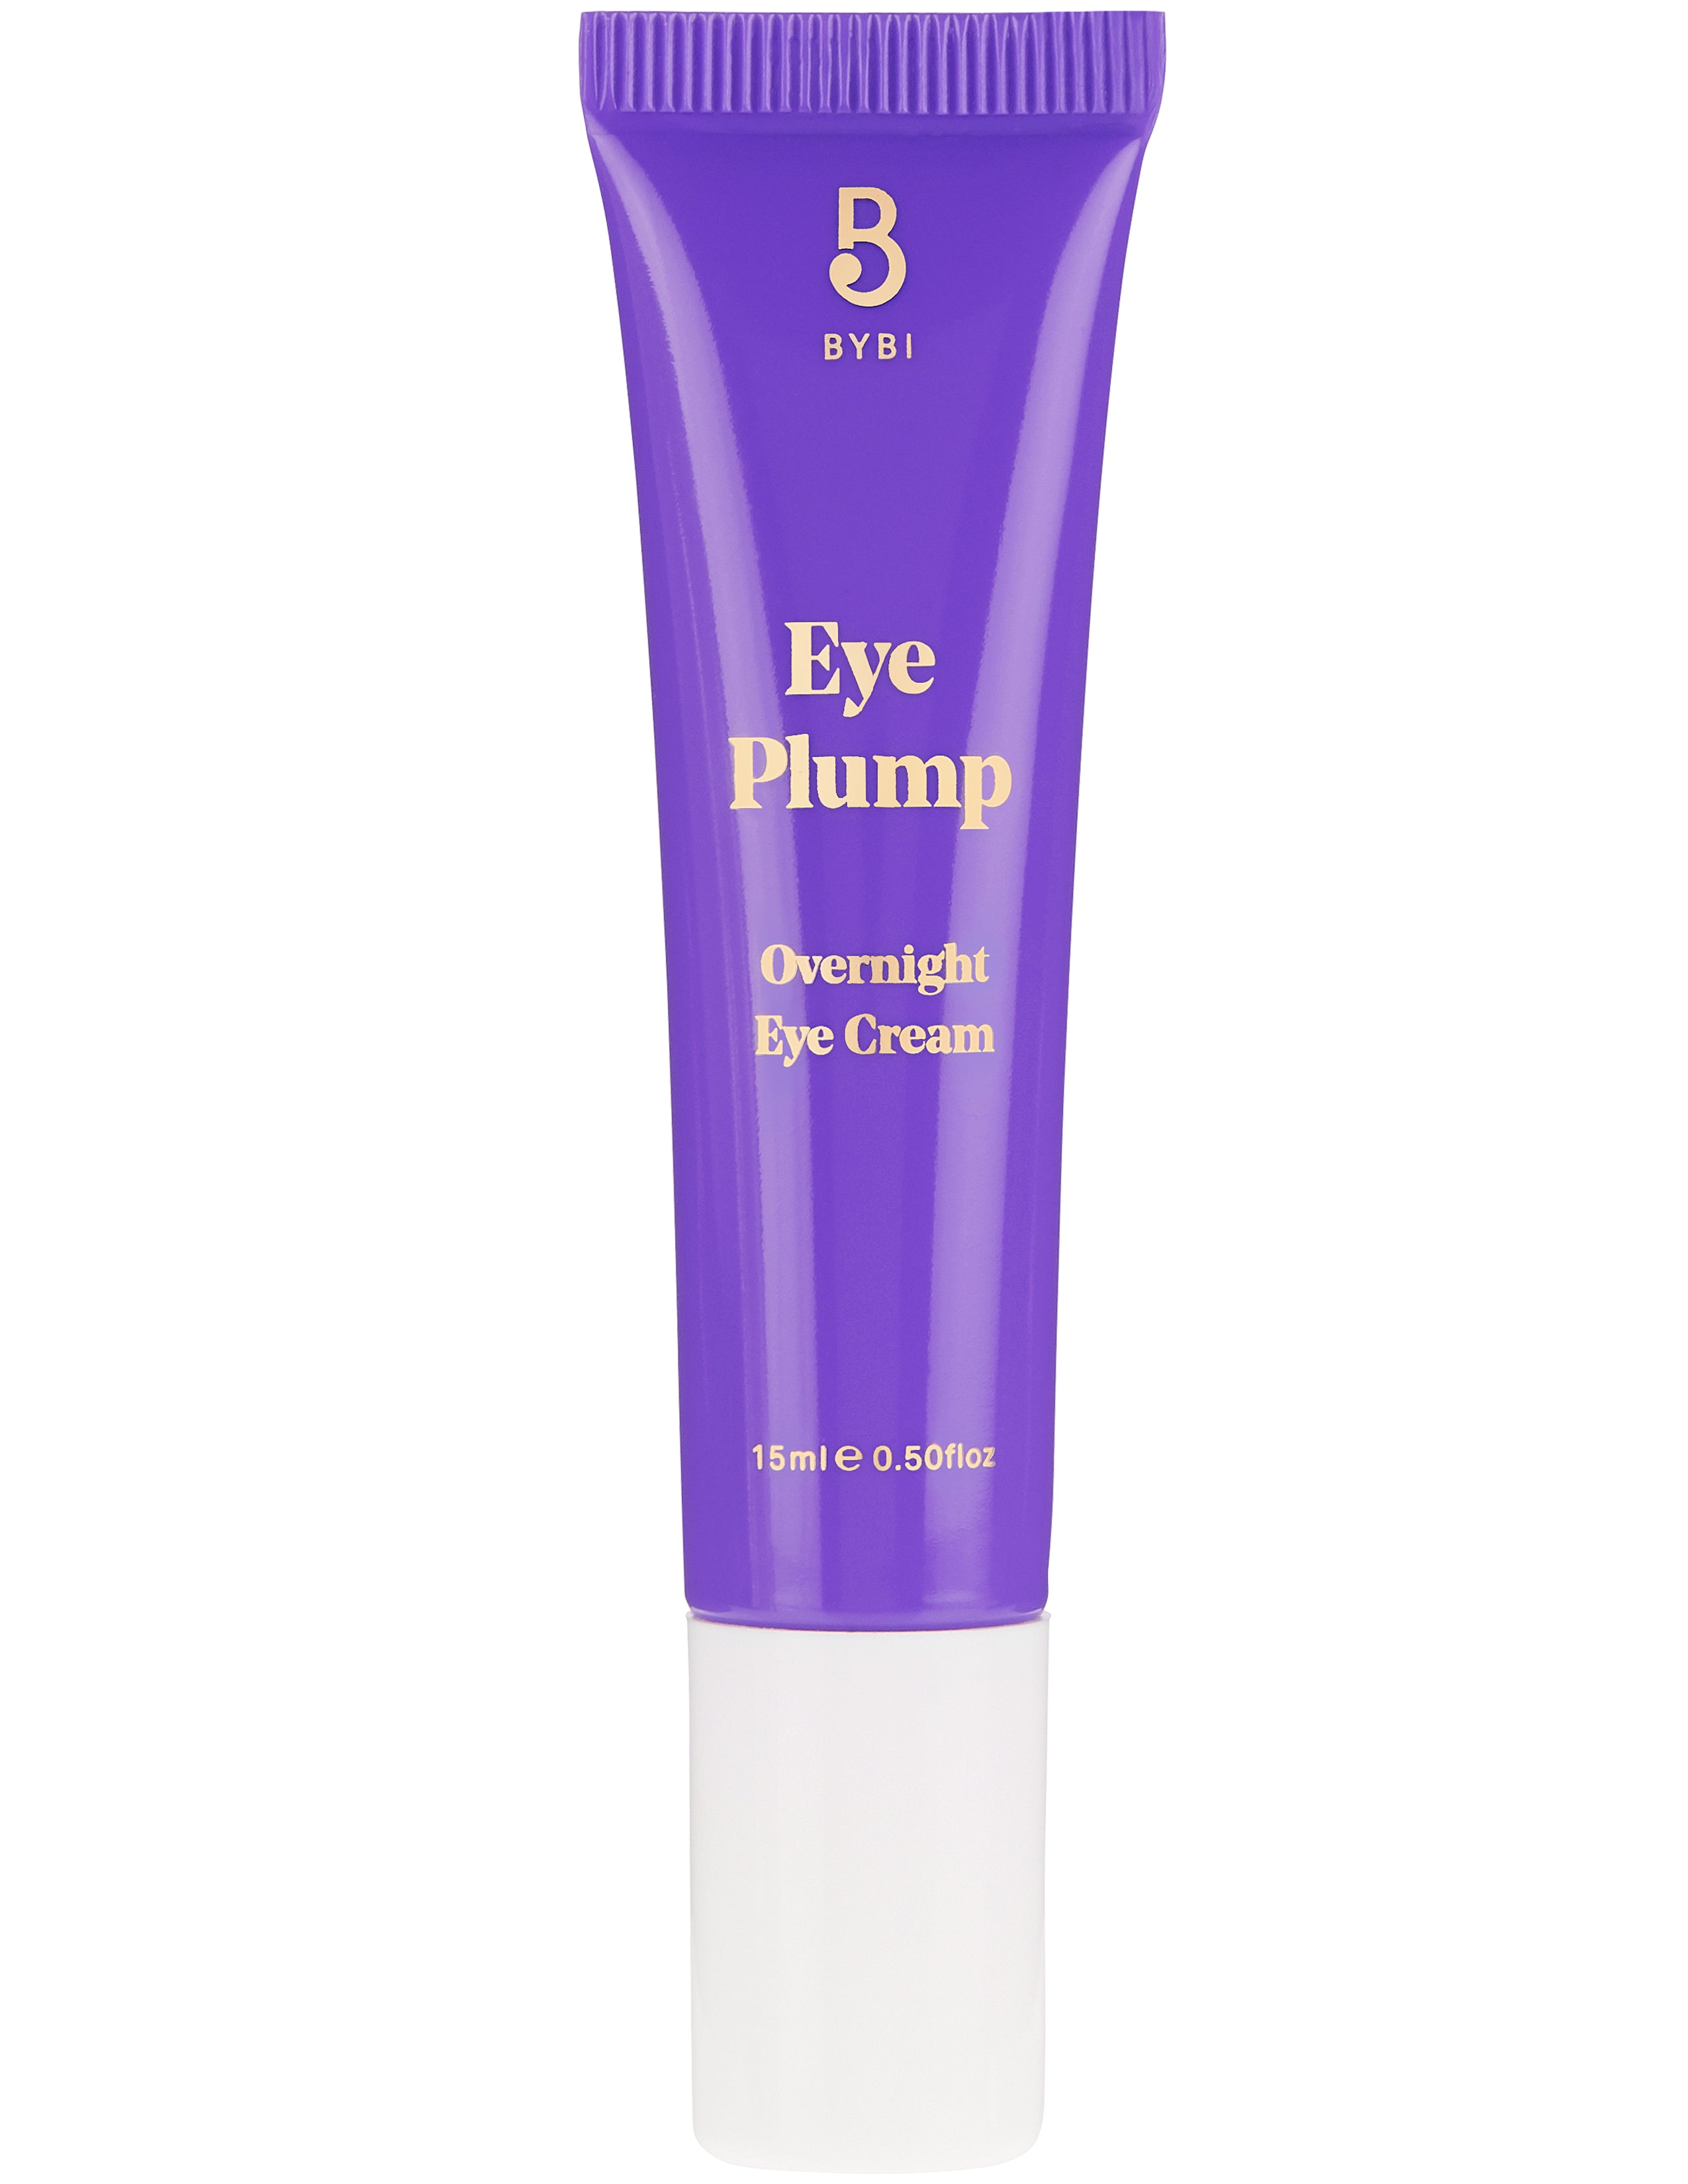 Eye Plump Bakuchiol Eye Cream - Crema Contorno de Ojos